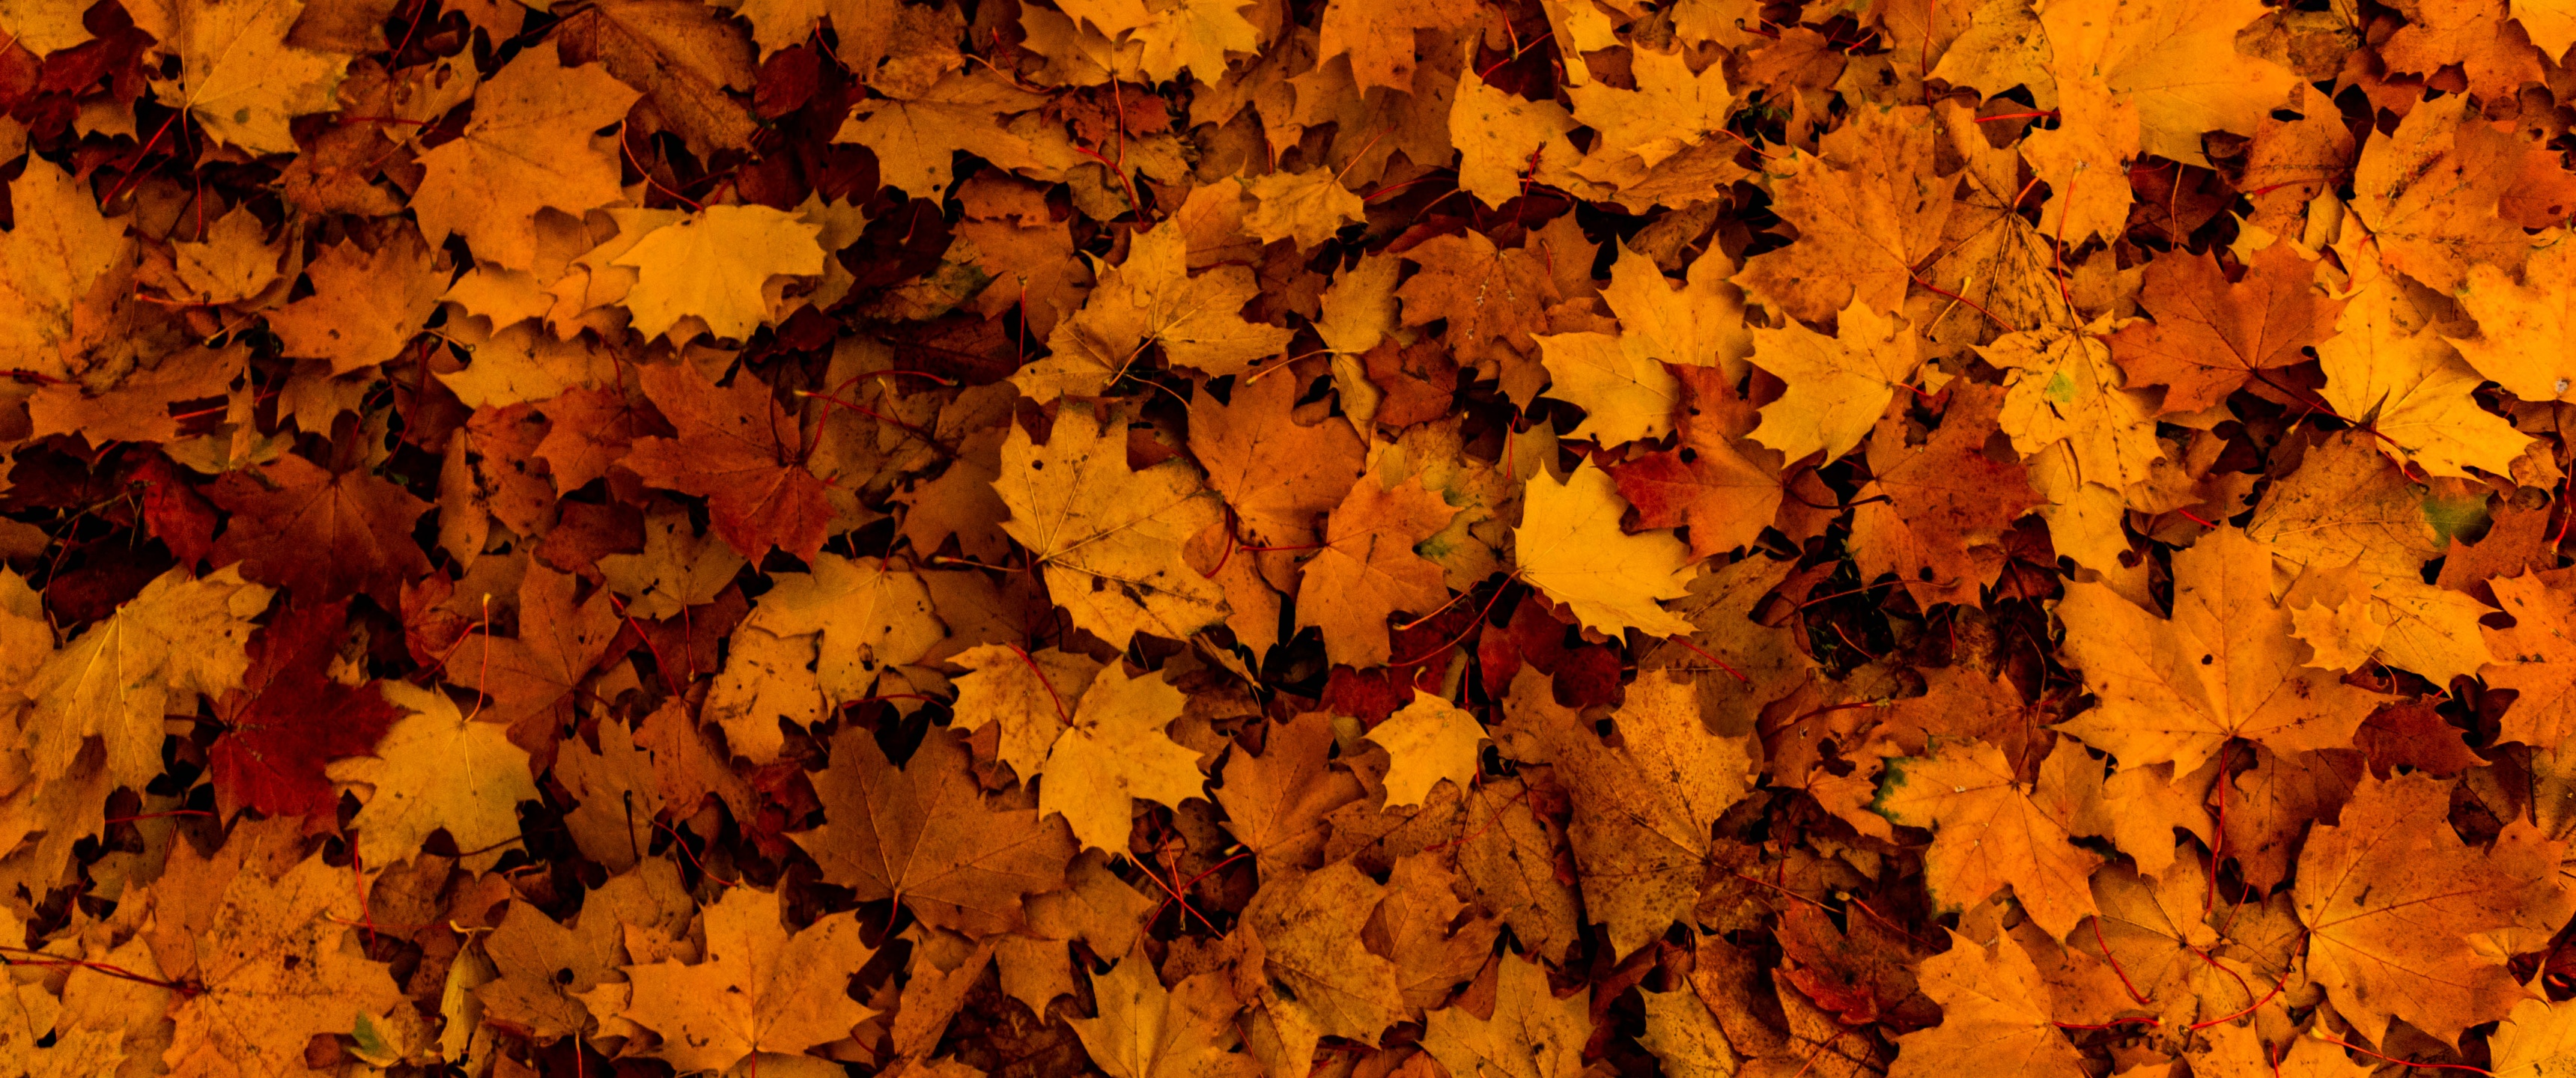 Fallen Leaves Wallpaper 4K, Autumn, Maple leaves, Nature, #4730